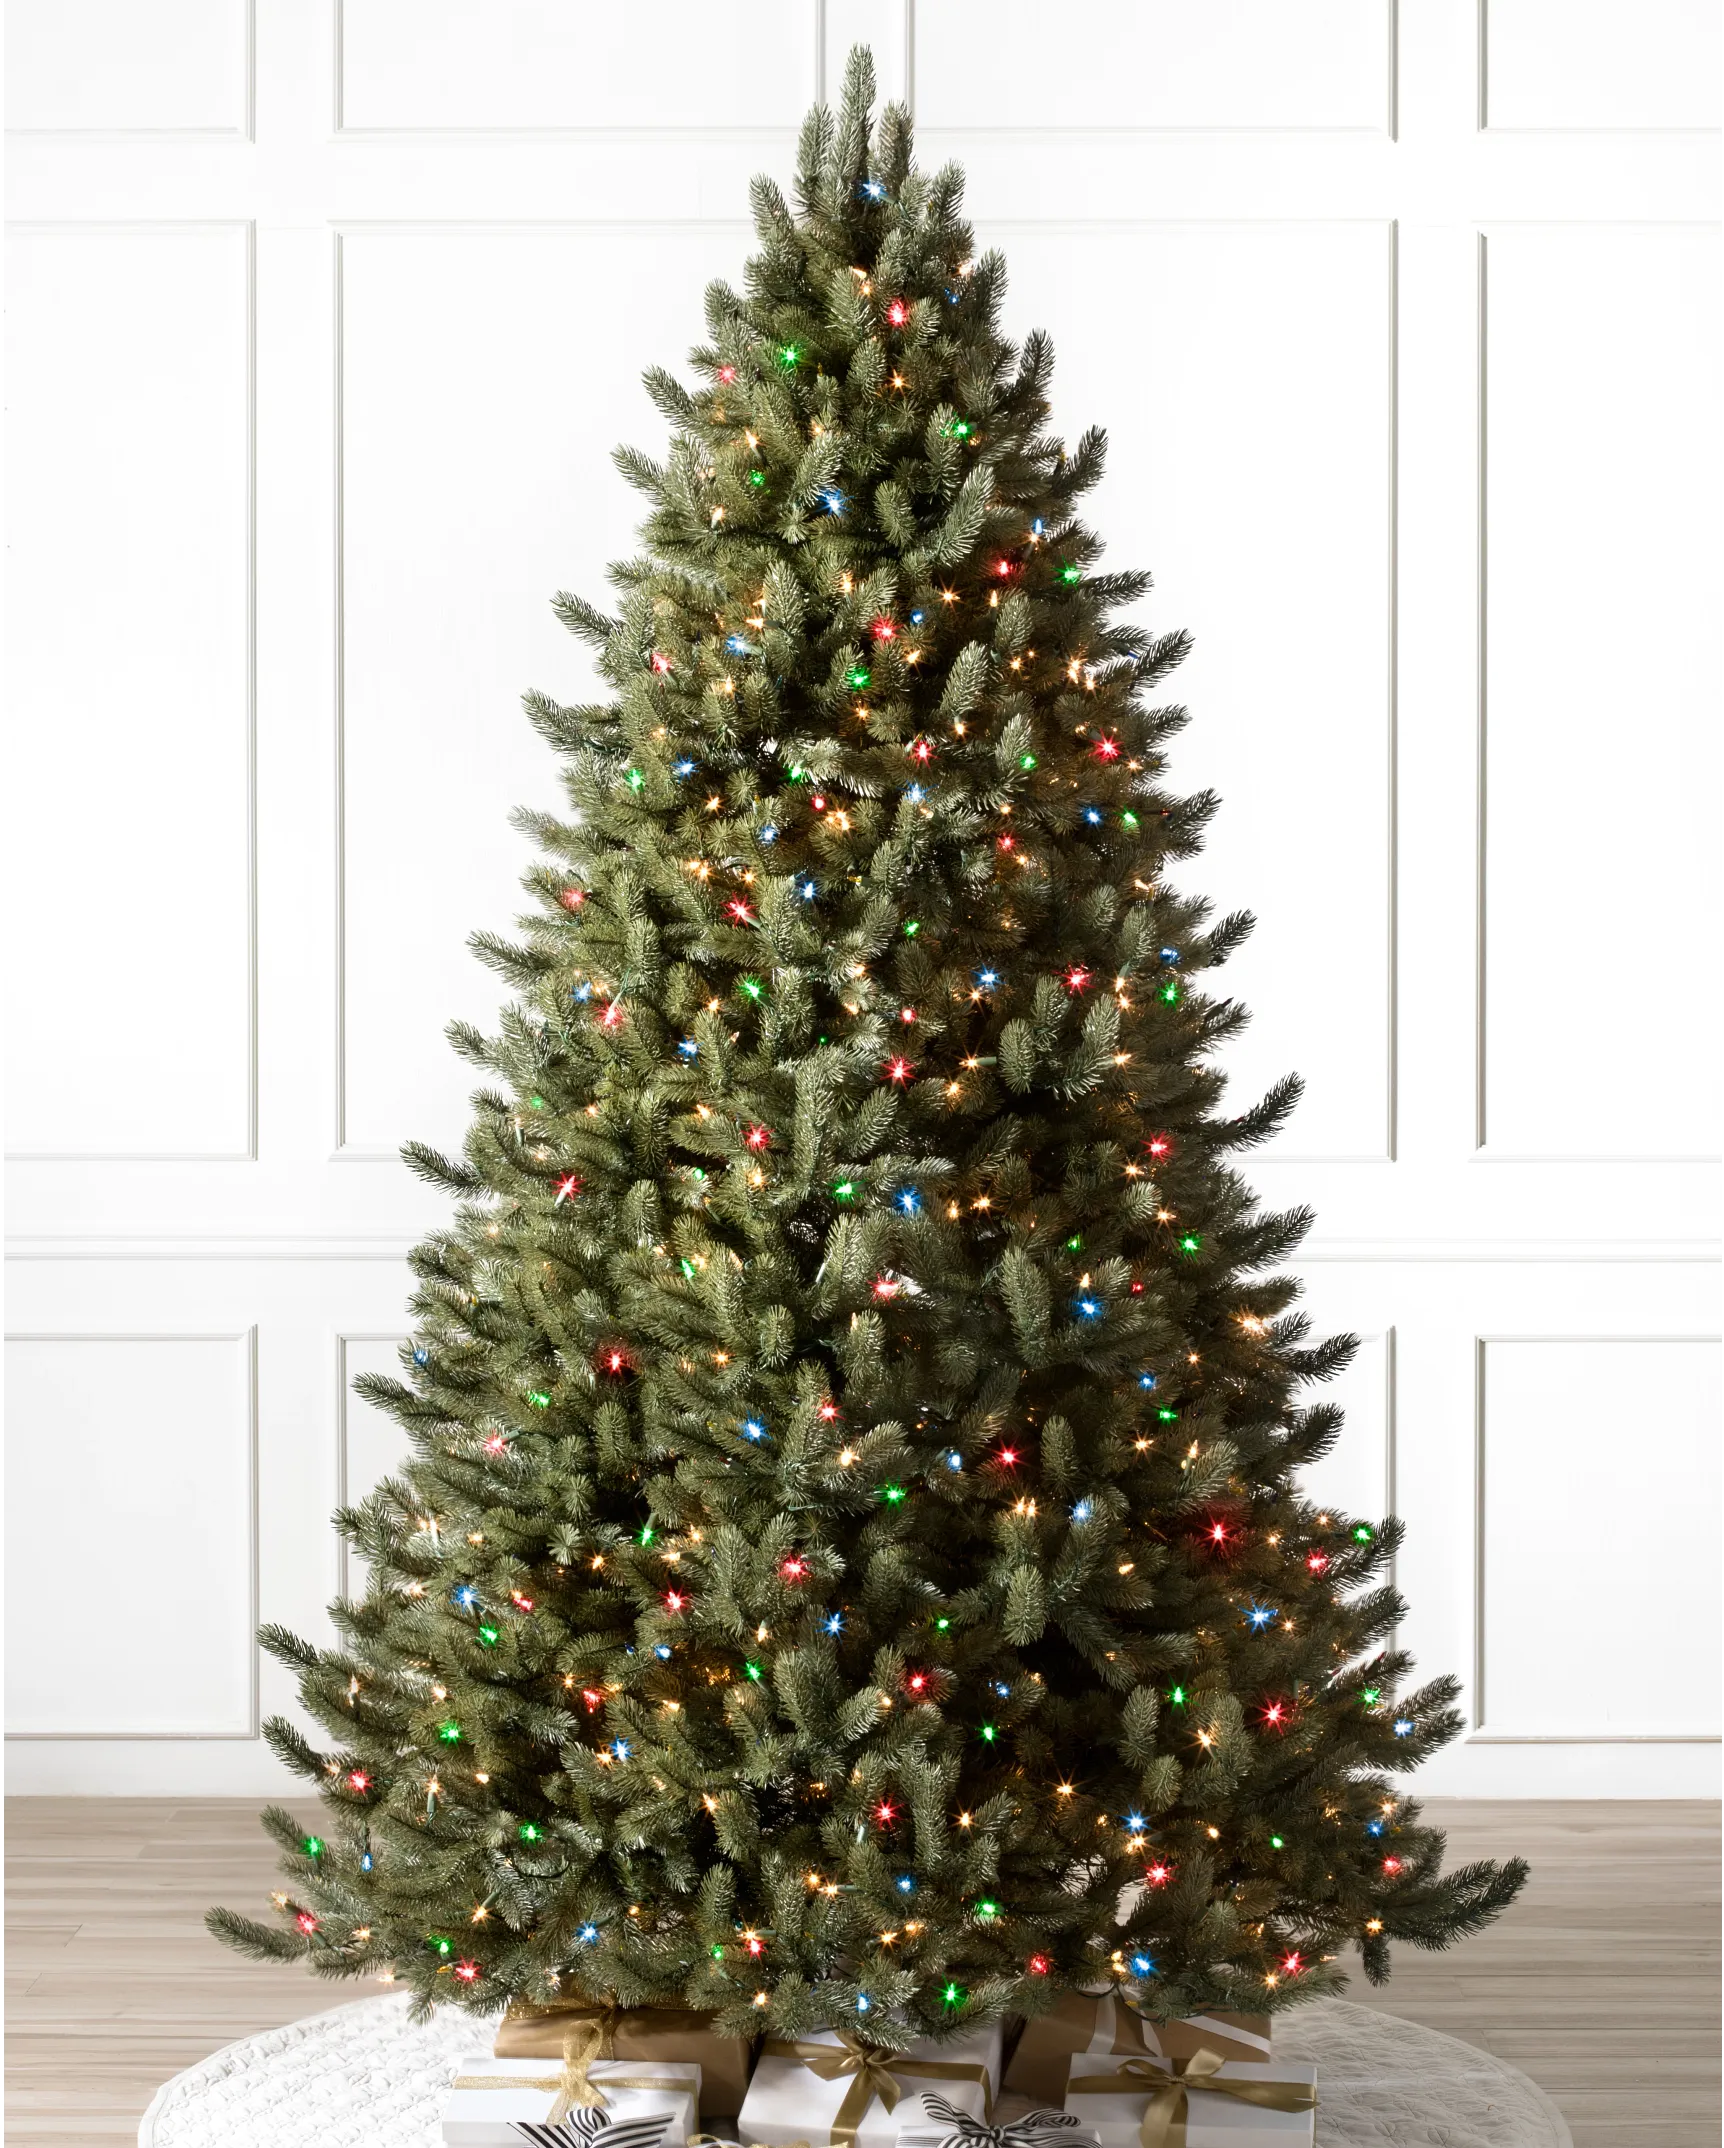 https://source.widen.net/content/y9y2feecpk/webp/Vermont-White-Spruce-Artificial-Christmas-Tree_LEDCPLUSC_SSC-30.webp?position=c&color=ffffffff&quality=80&u=7mzq6p&w=862&h=1074&retina=true